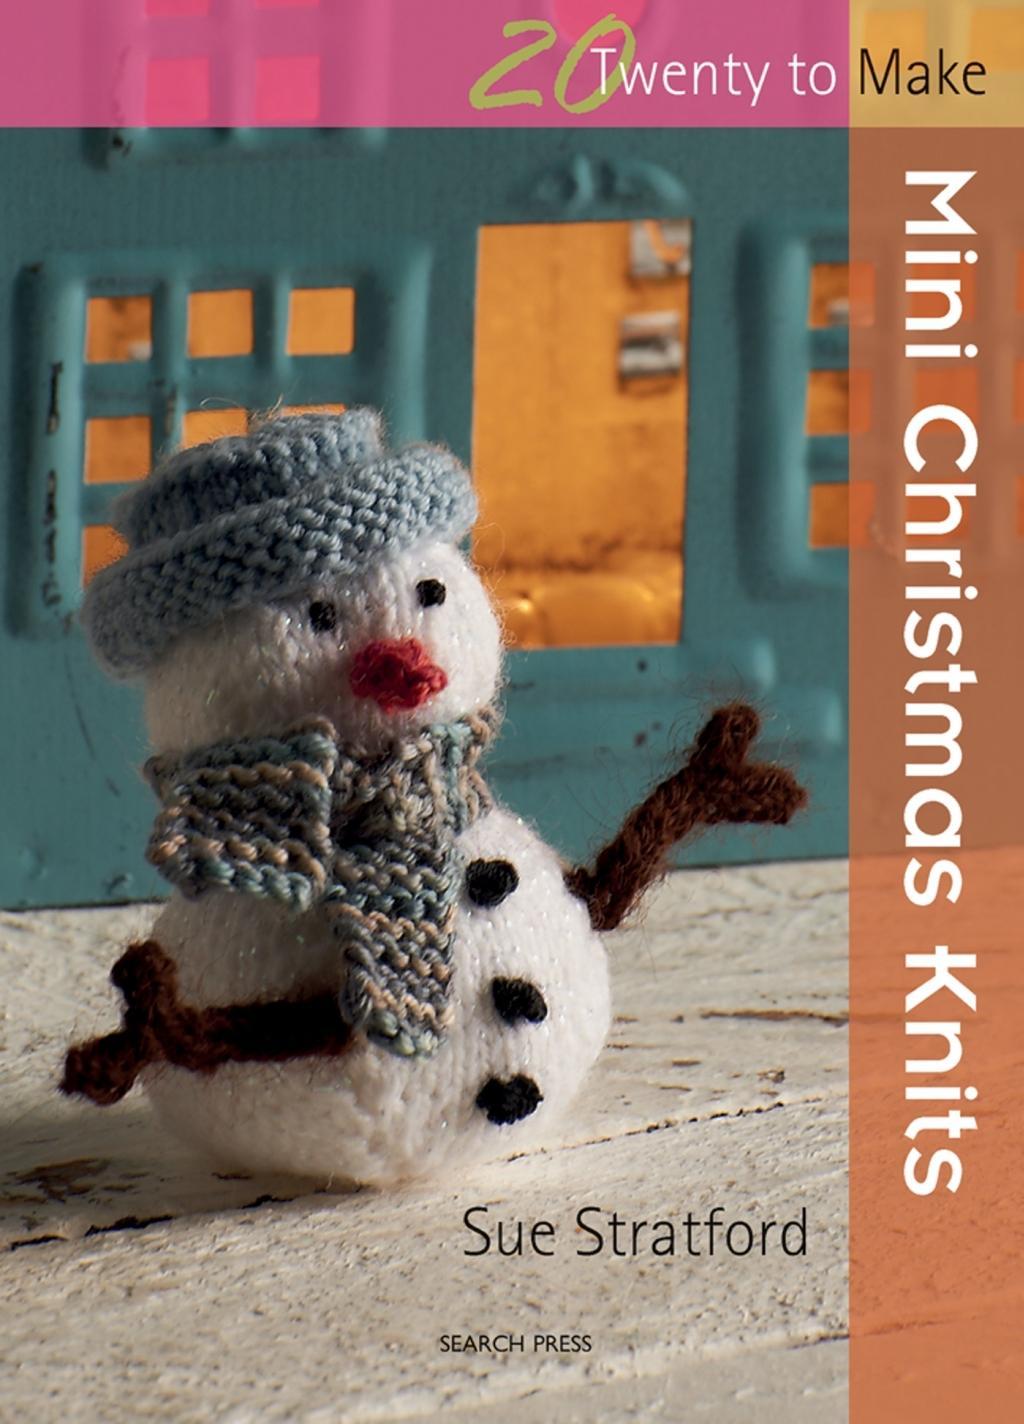 20 to Knit: Mini Christmas Knits / Sue Stratford / Taschenbuch / Kartoniert / Broschiert / Englisch / 2011 / Search Press Ltd / EAN 9781844487226 - Stratford, Sue